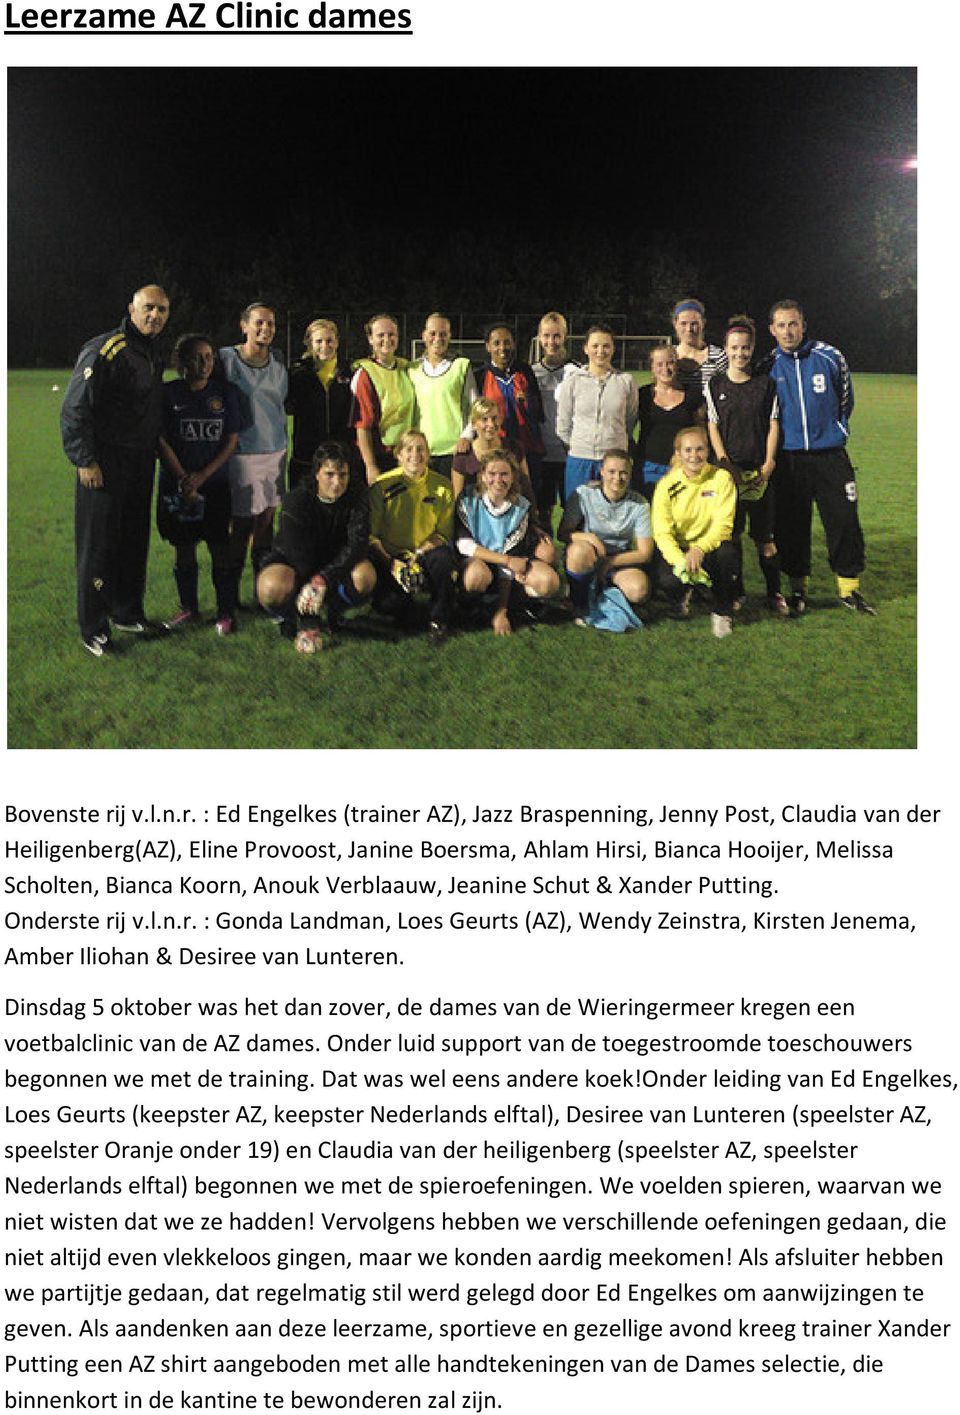 Dinsdag 5 oktober was het dan zover, de dames van de Wieringermeer kregen een voetbalclinic van de AZ dames. Onder luid support van de toegestroomde toeschouwers begonnen we met de training.